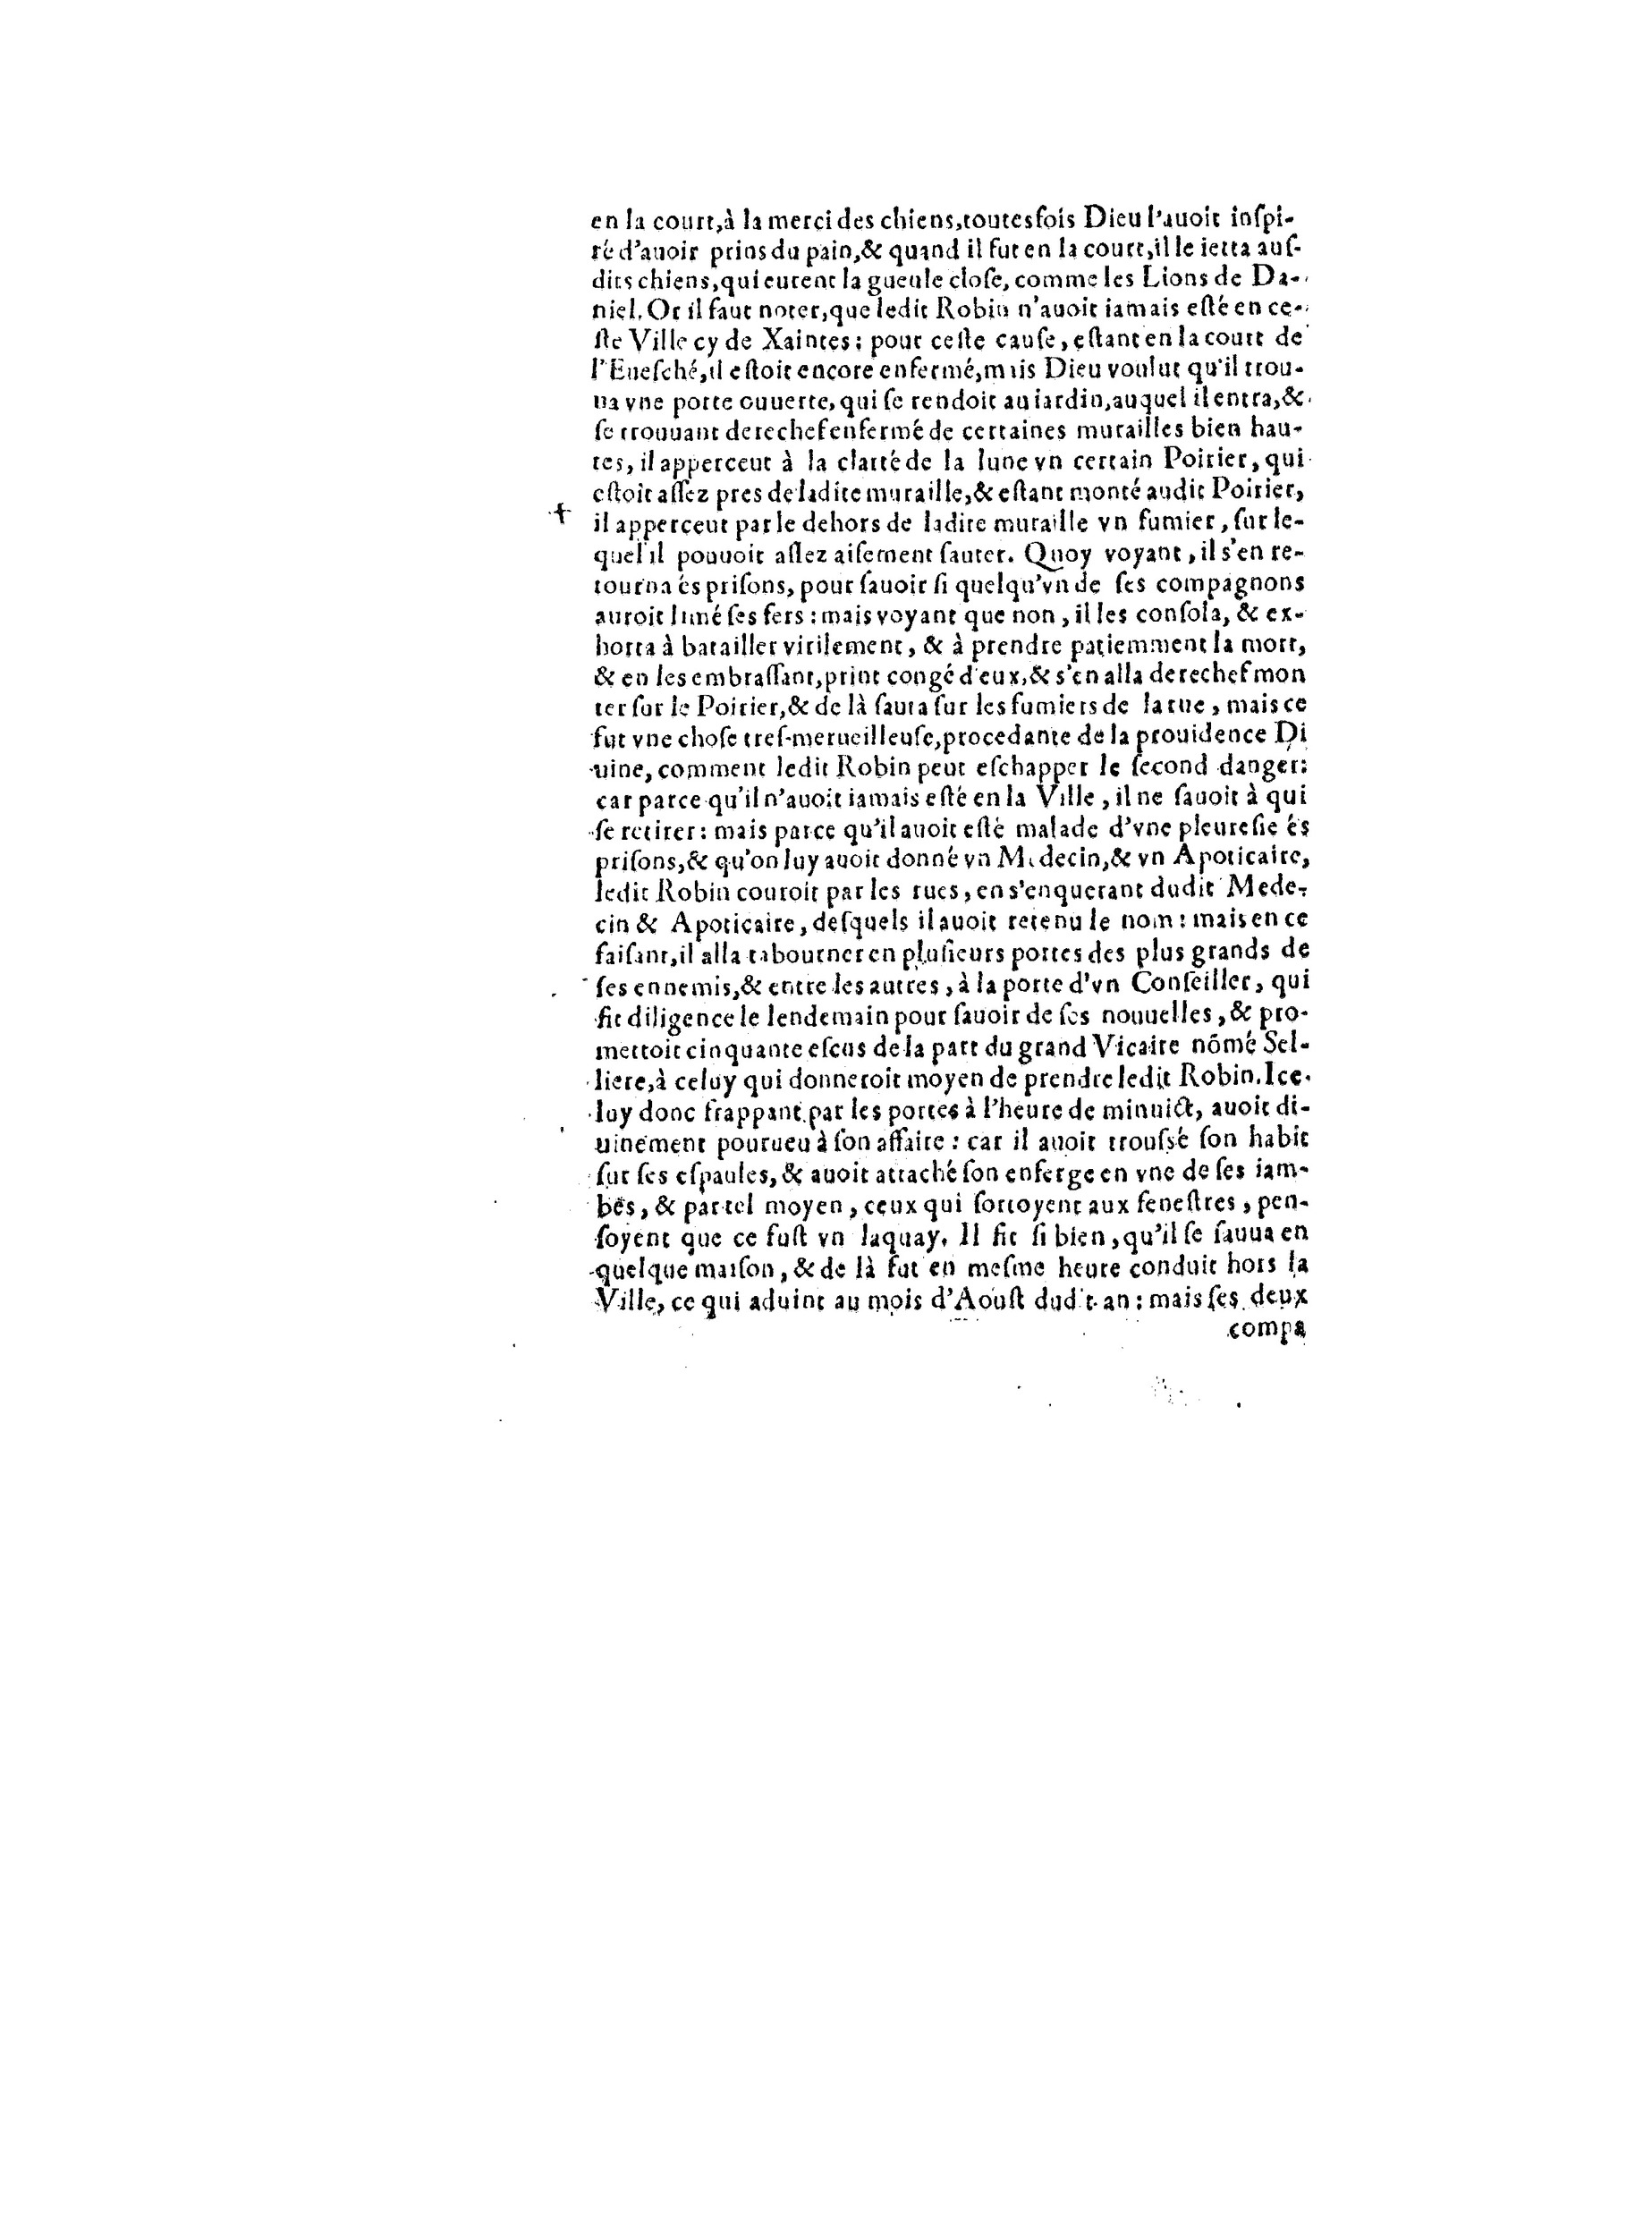 1563 Recepte veritable Berton_BNF_Page_109.jpg